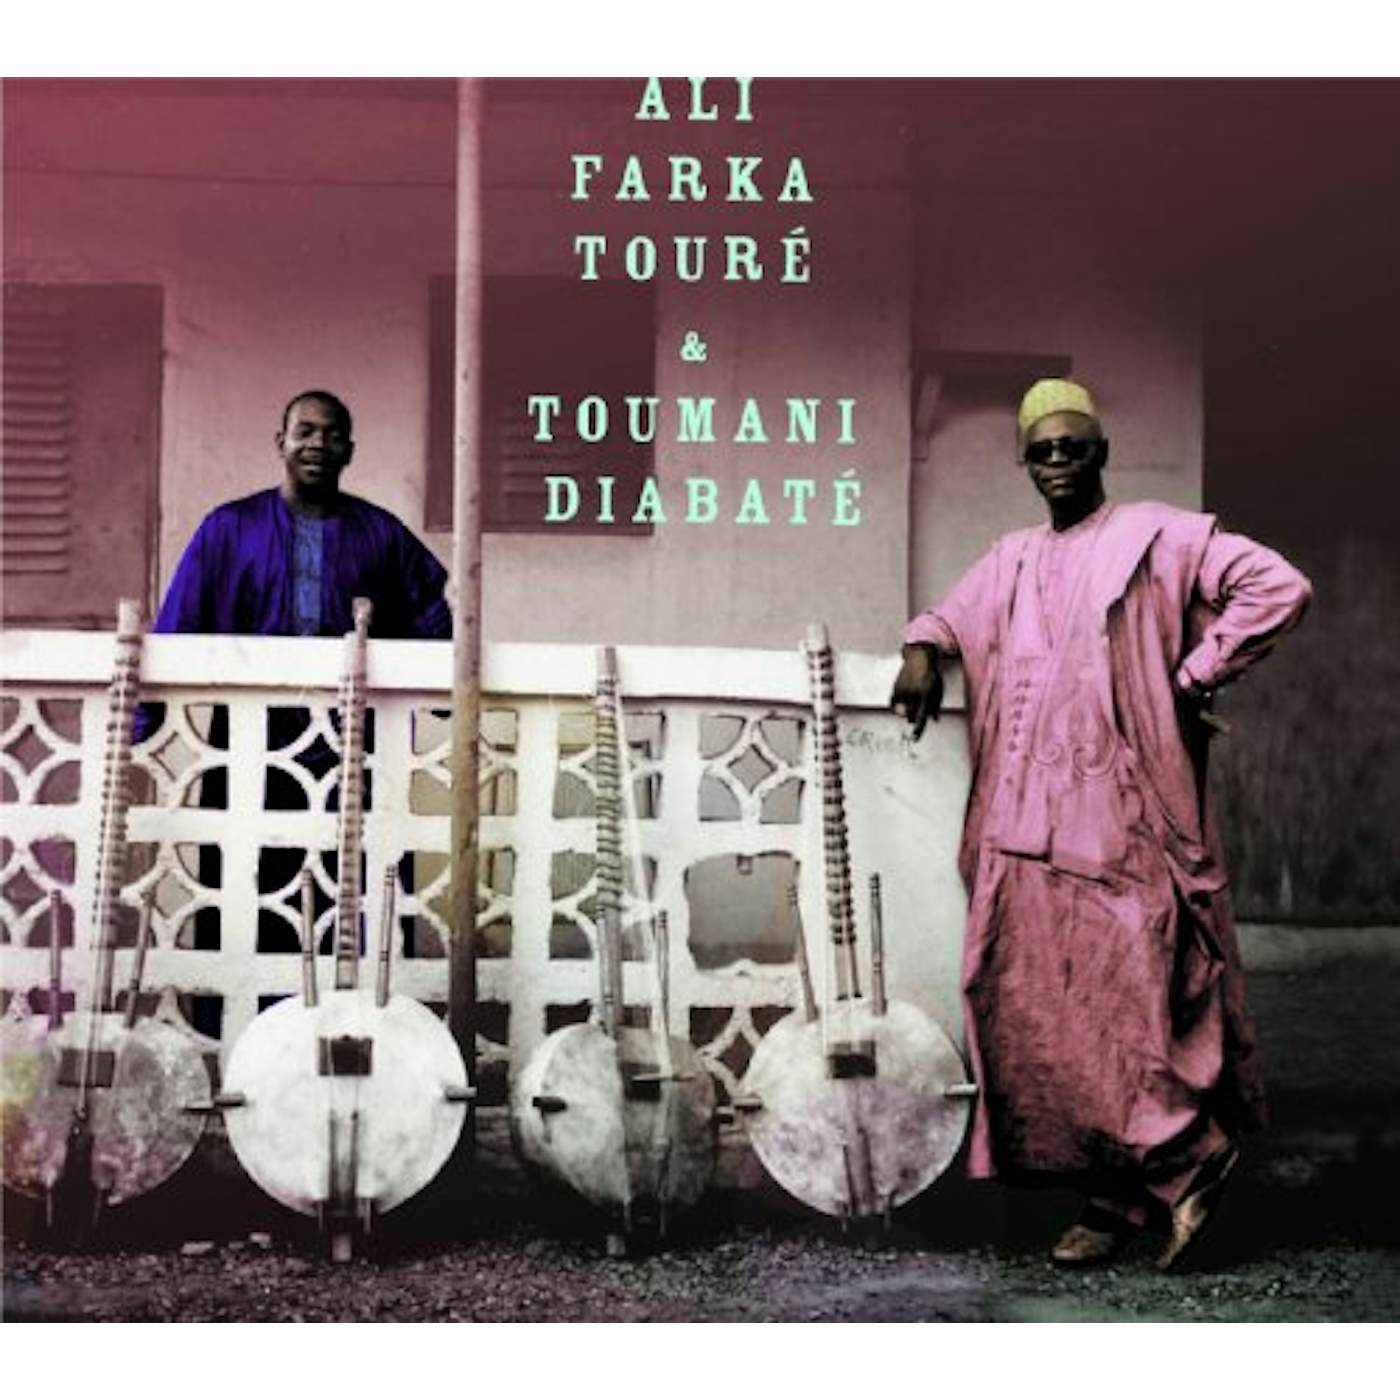 Ali Farka Touré & Toumani Diabaté ALI & TOUMANI CD